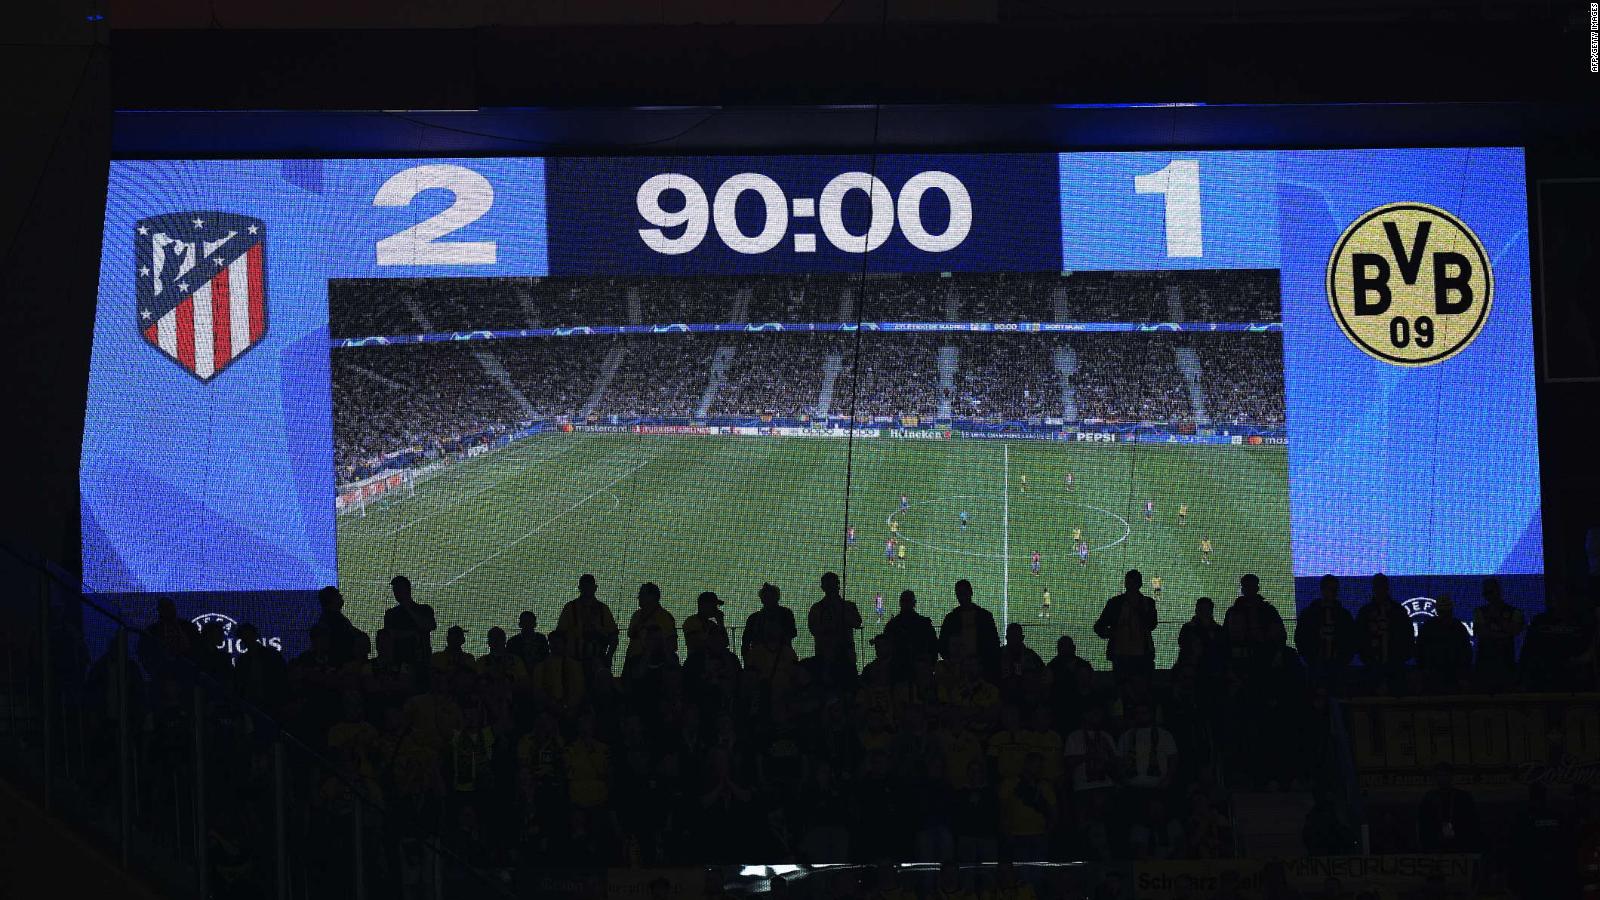 Champions League con seguridad extrema: así fue el partido entre
Atlético de Madrid y Borussia Dortmund